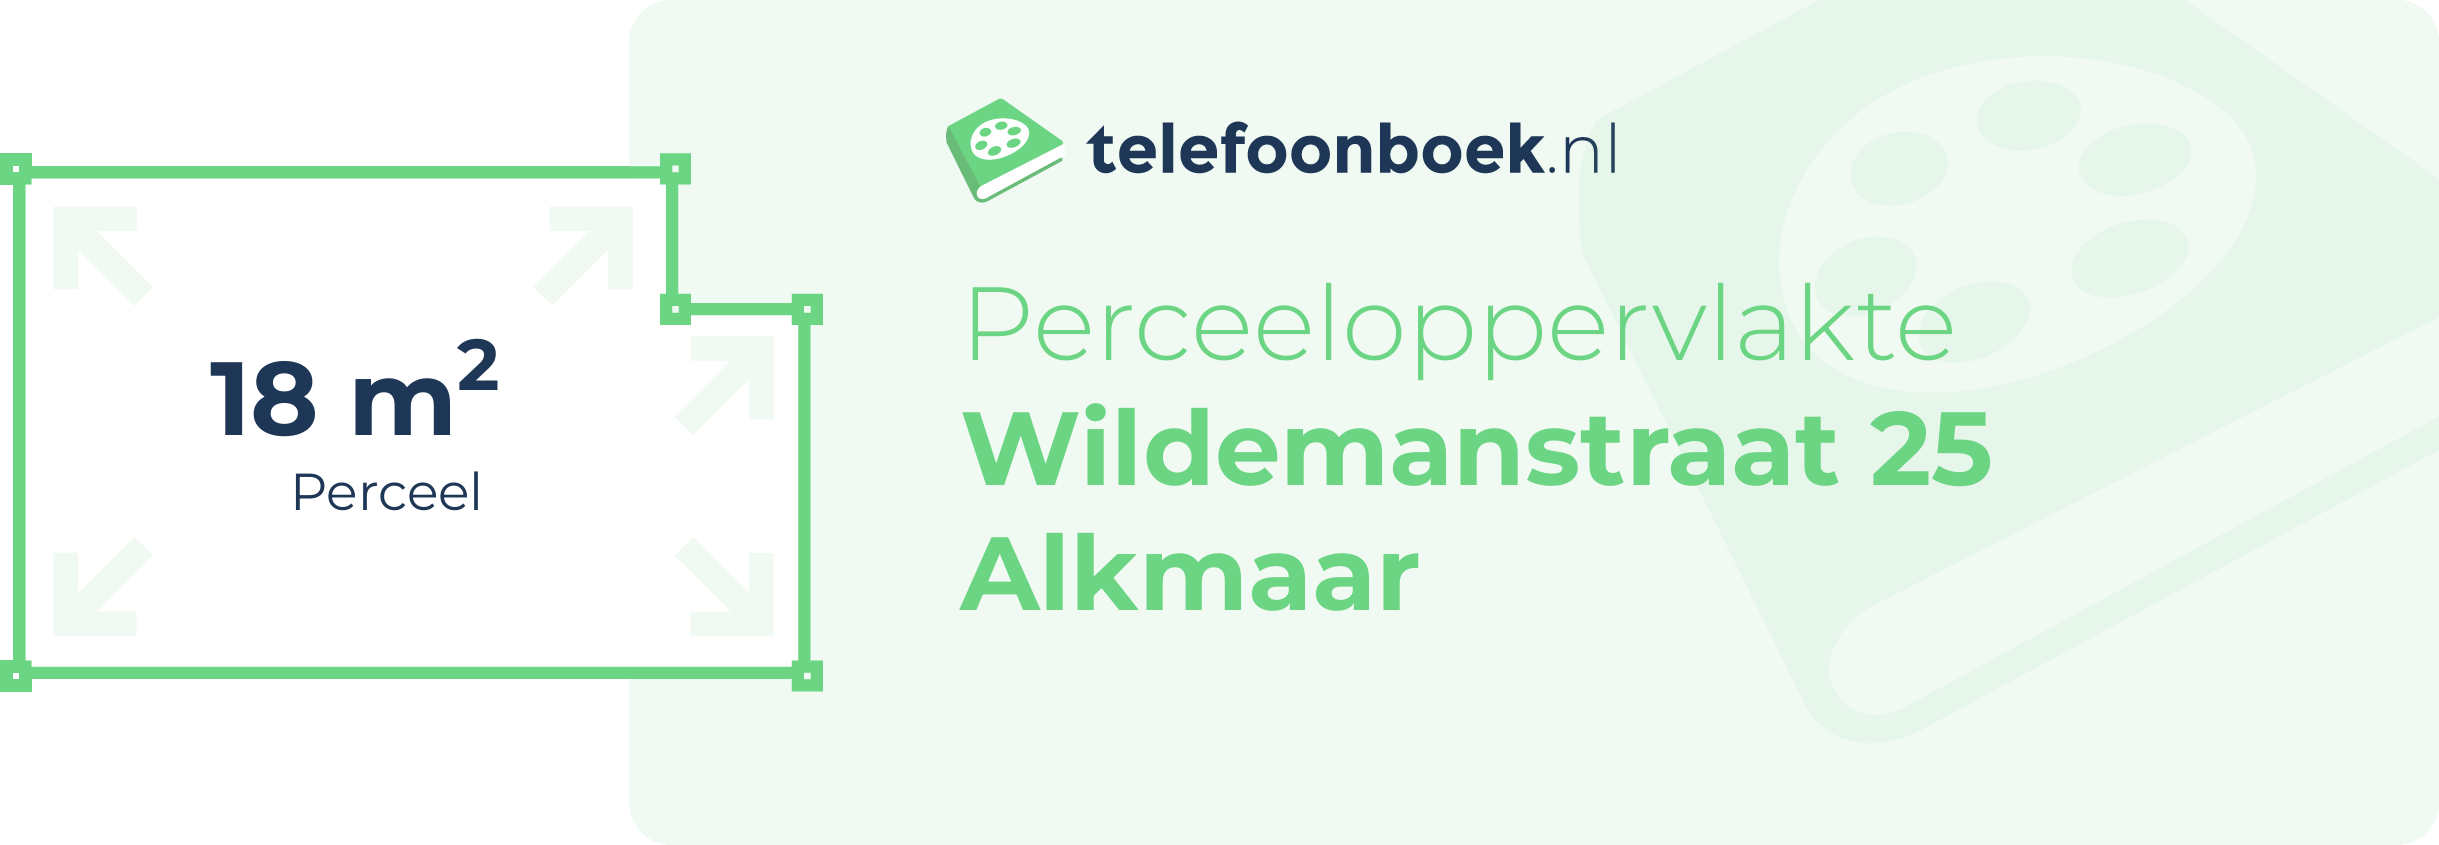 Perceeloppervlakte Wildemanstraat 25 Alkmaar